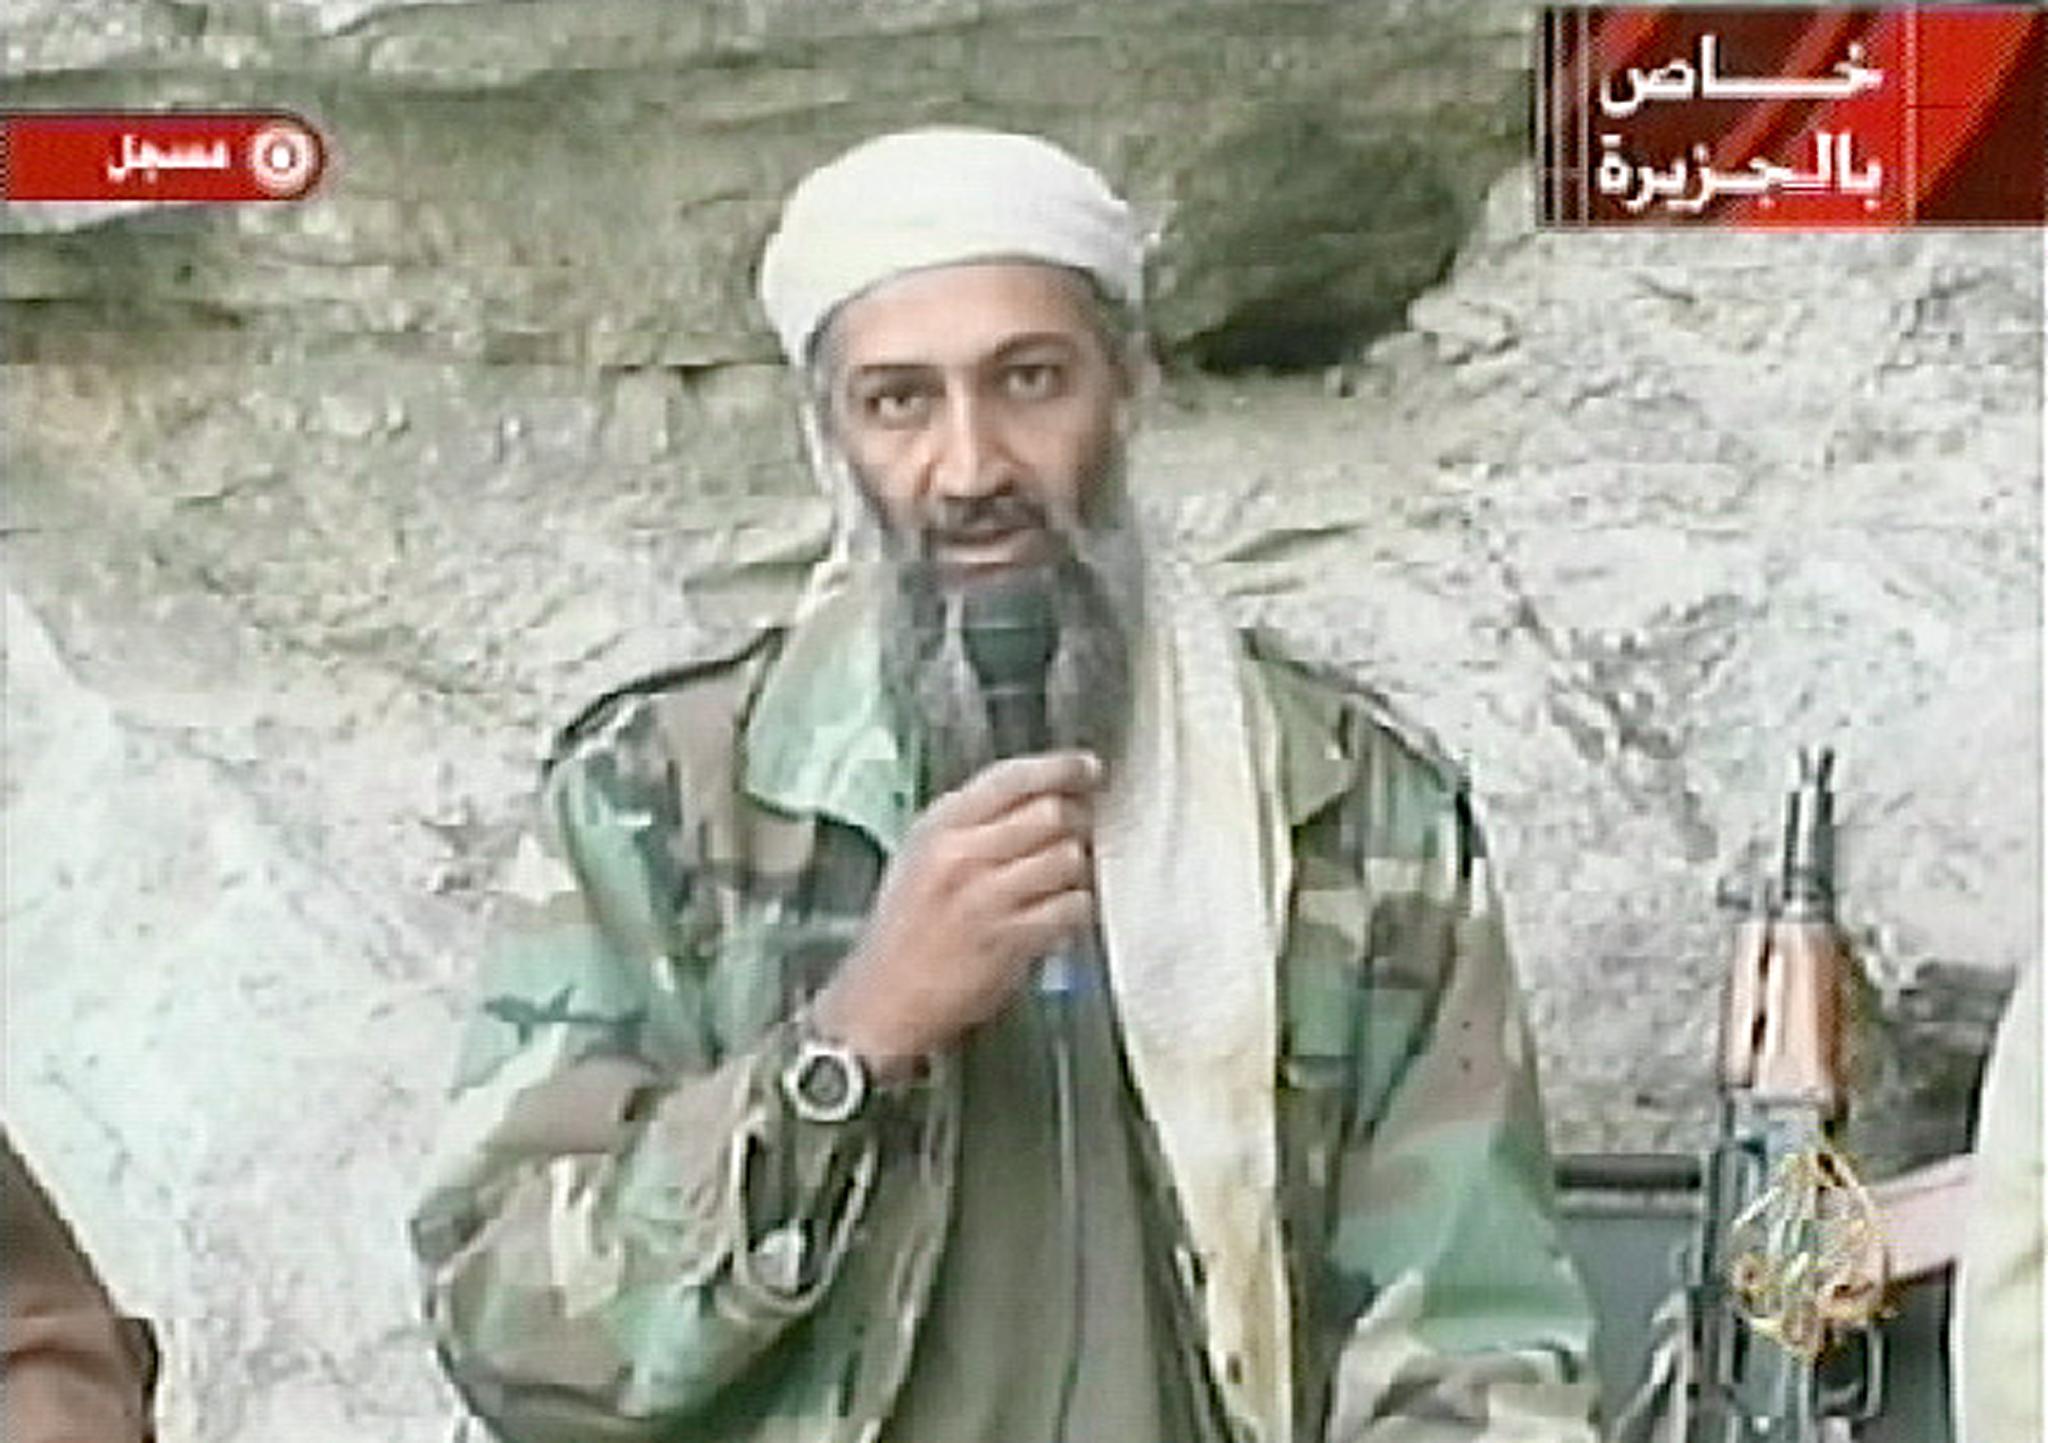 Other sightings of Osama Bin Laden